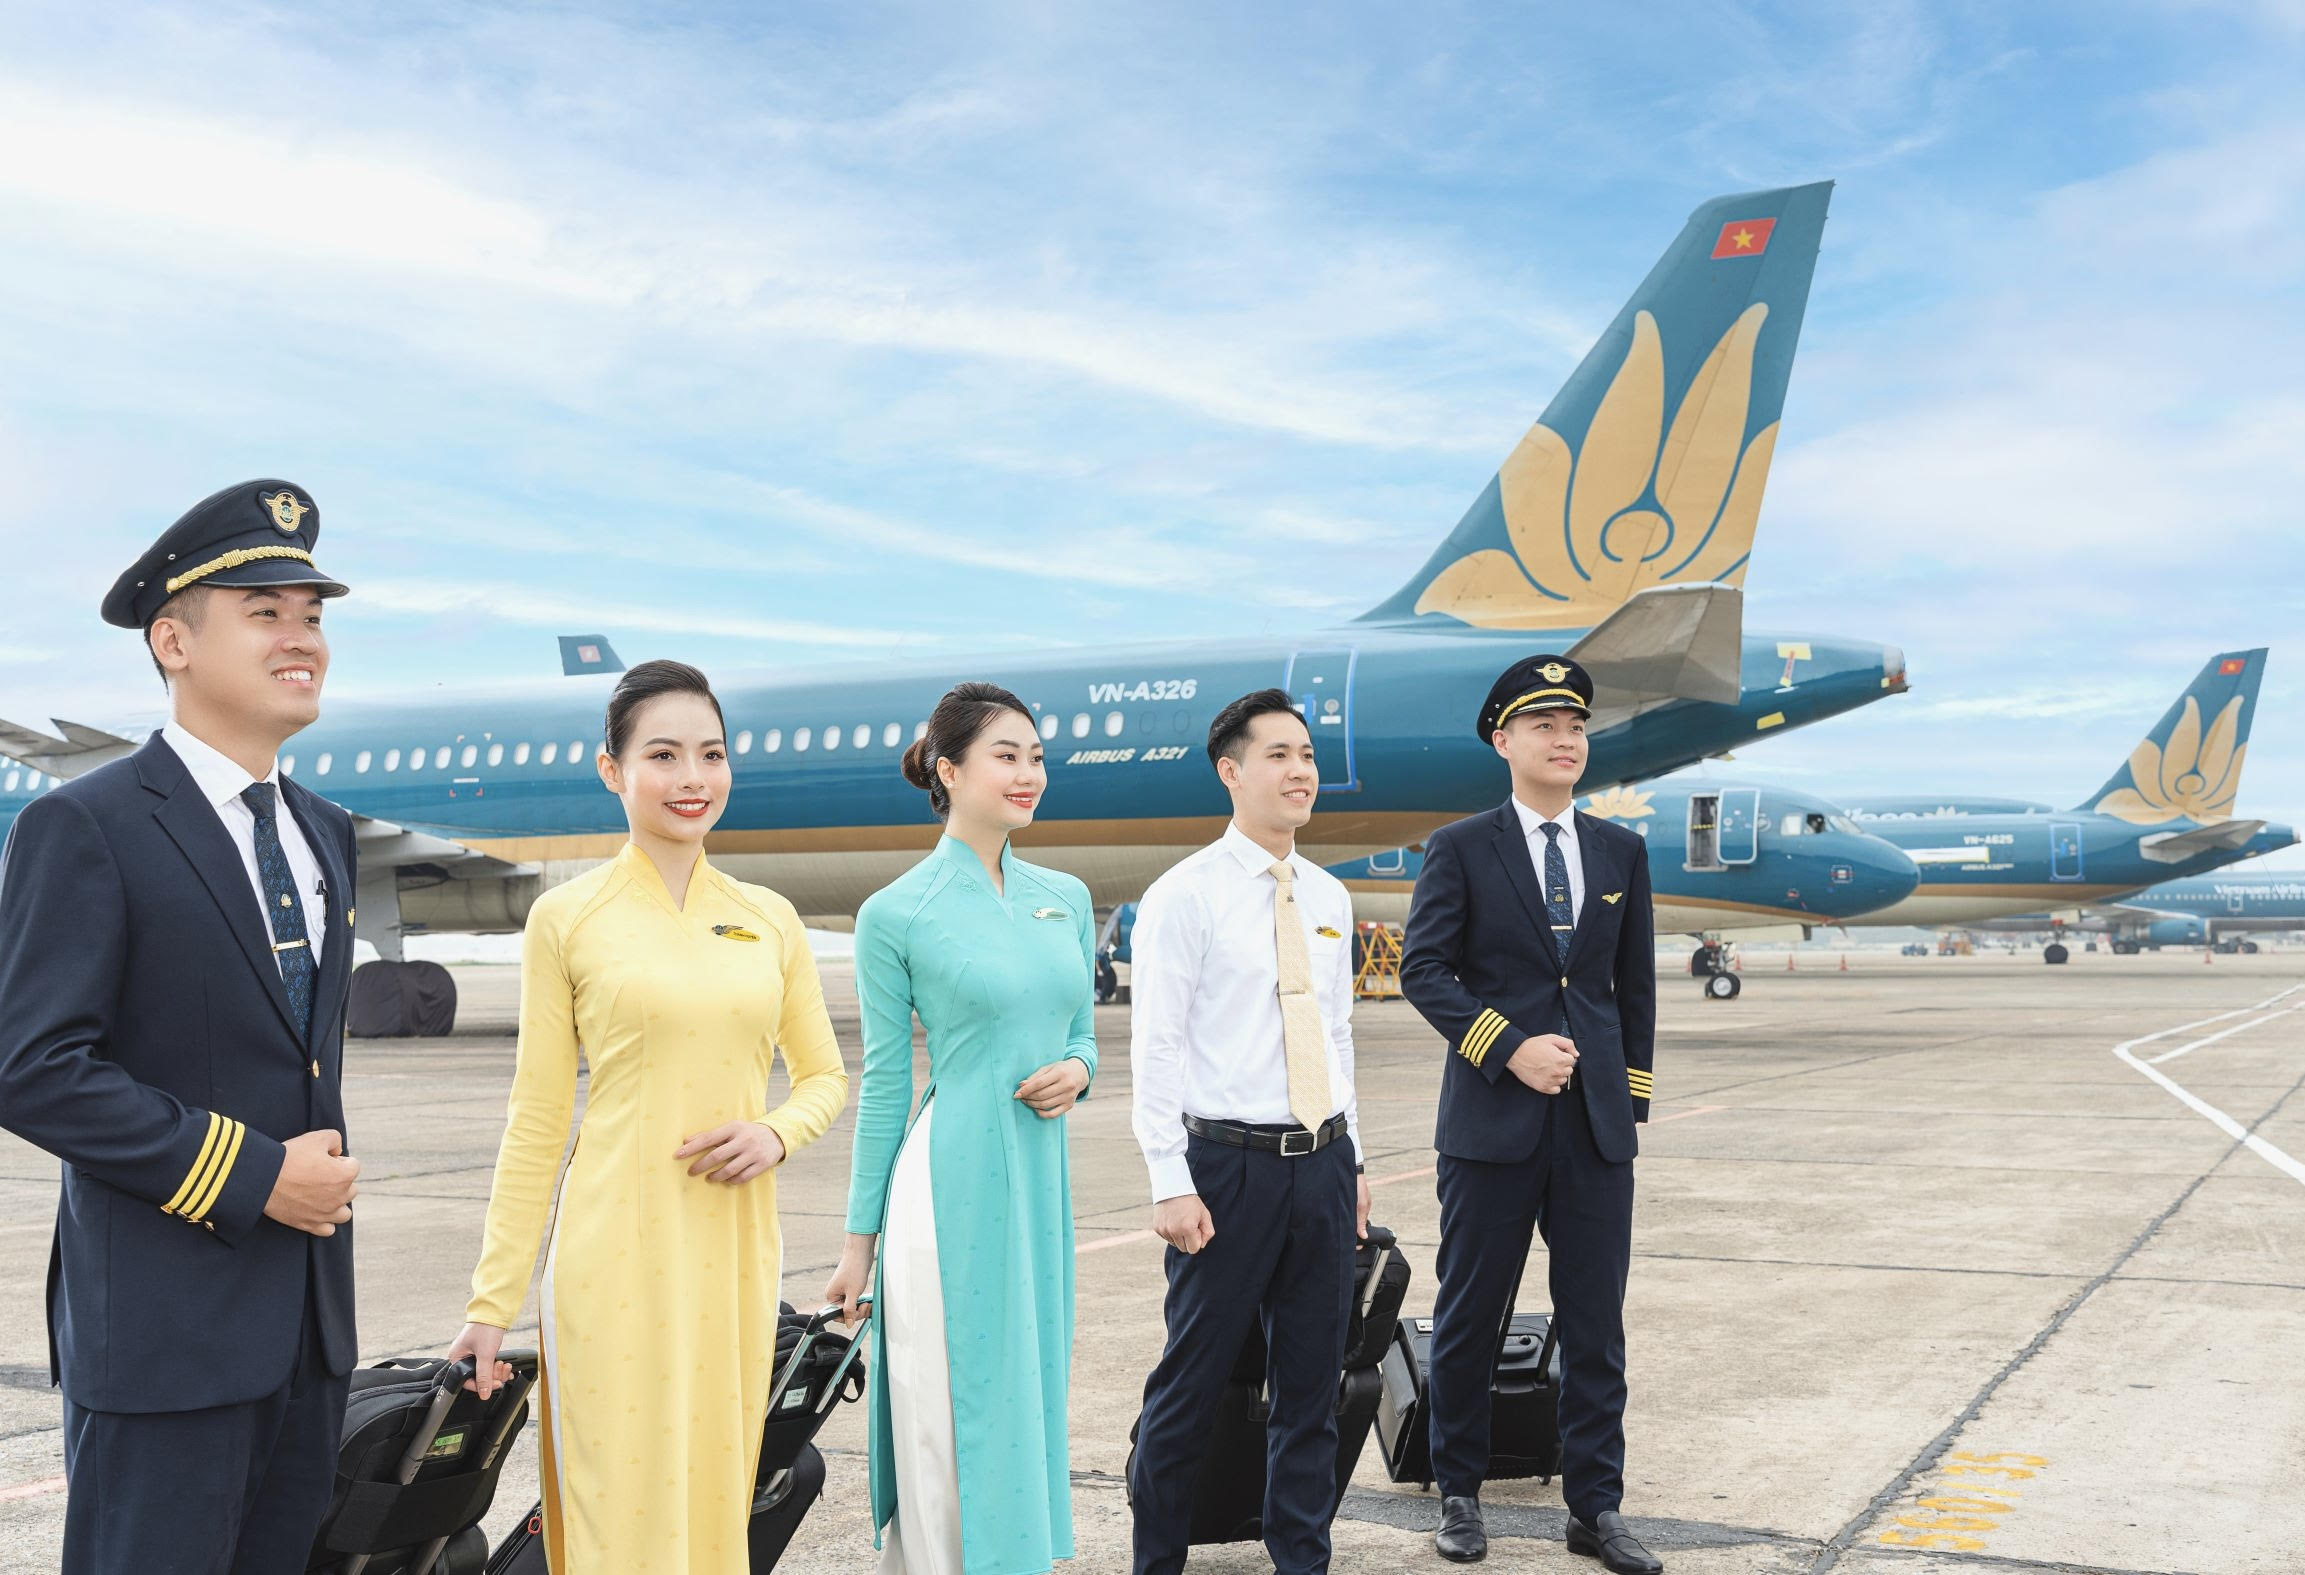 Hãng hàng không Vietnam Airlines